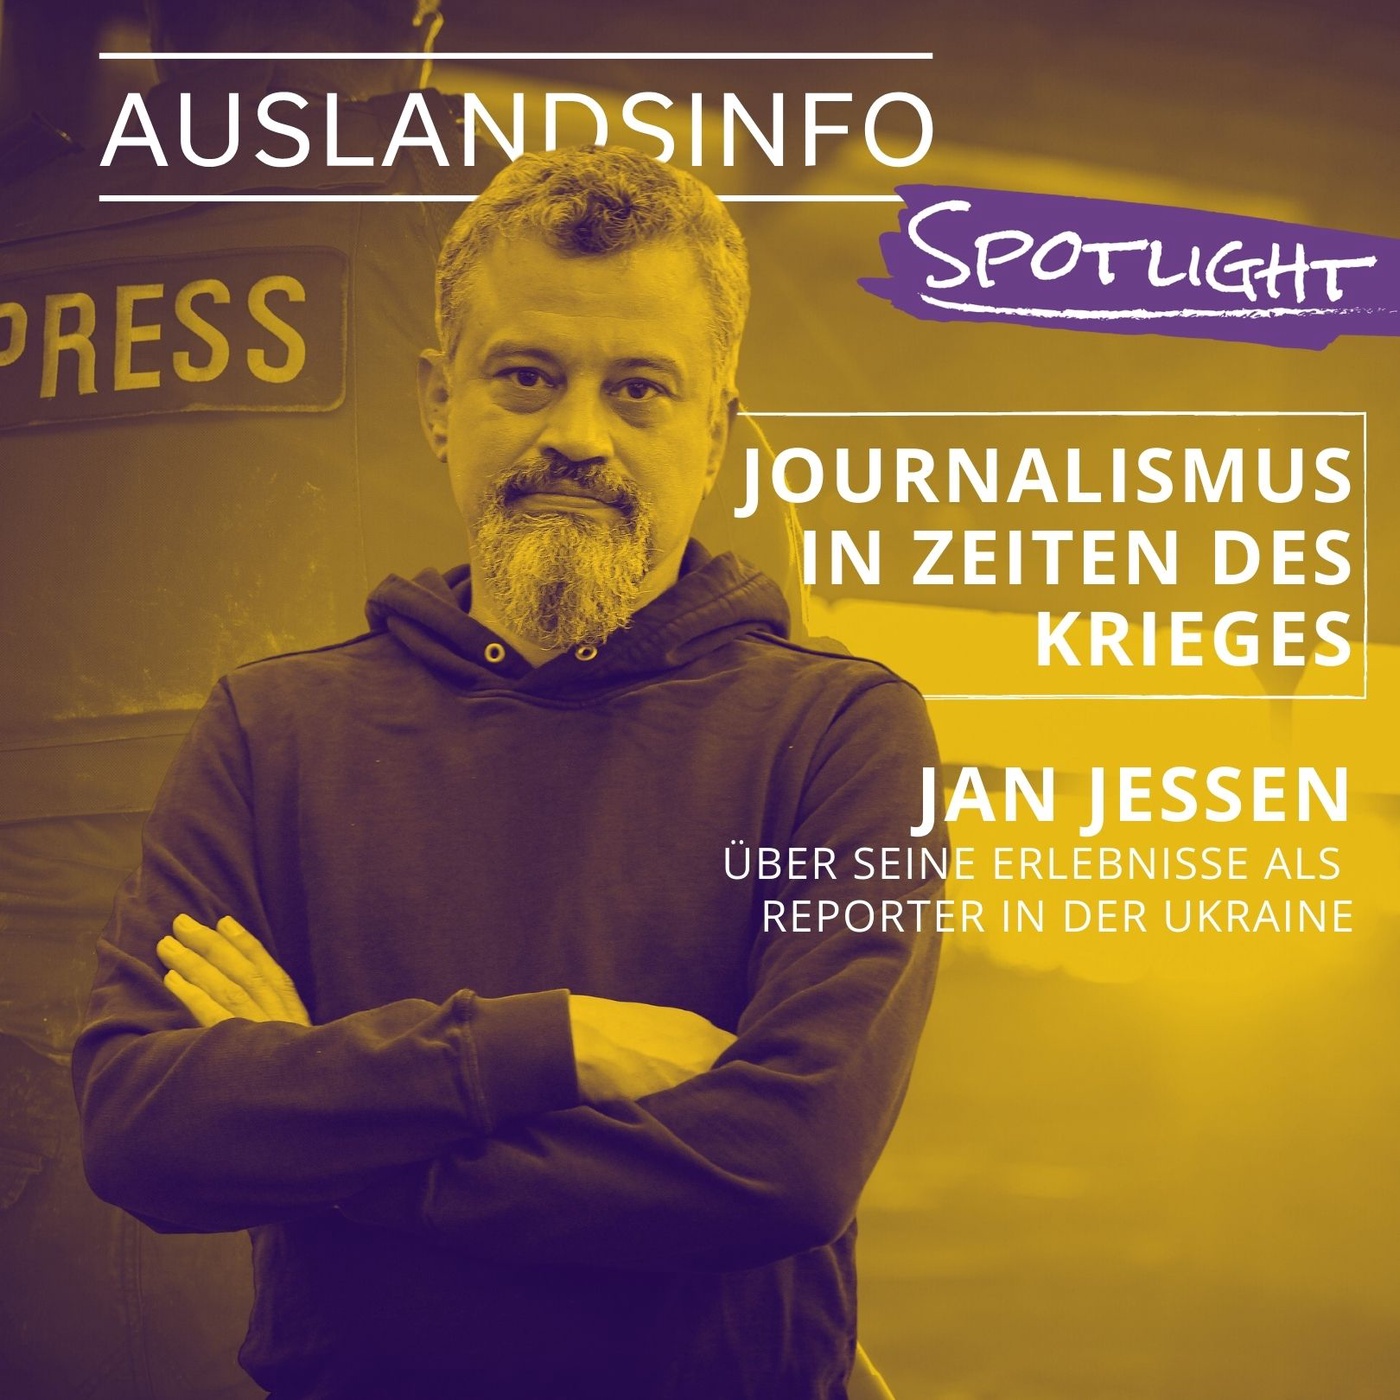 Journalismus in Zeiten des Krieges – Reporter Jan Jessen über seine Erlebnisse in der Ukraine